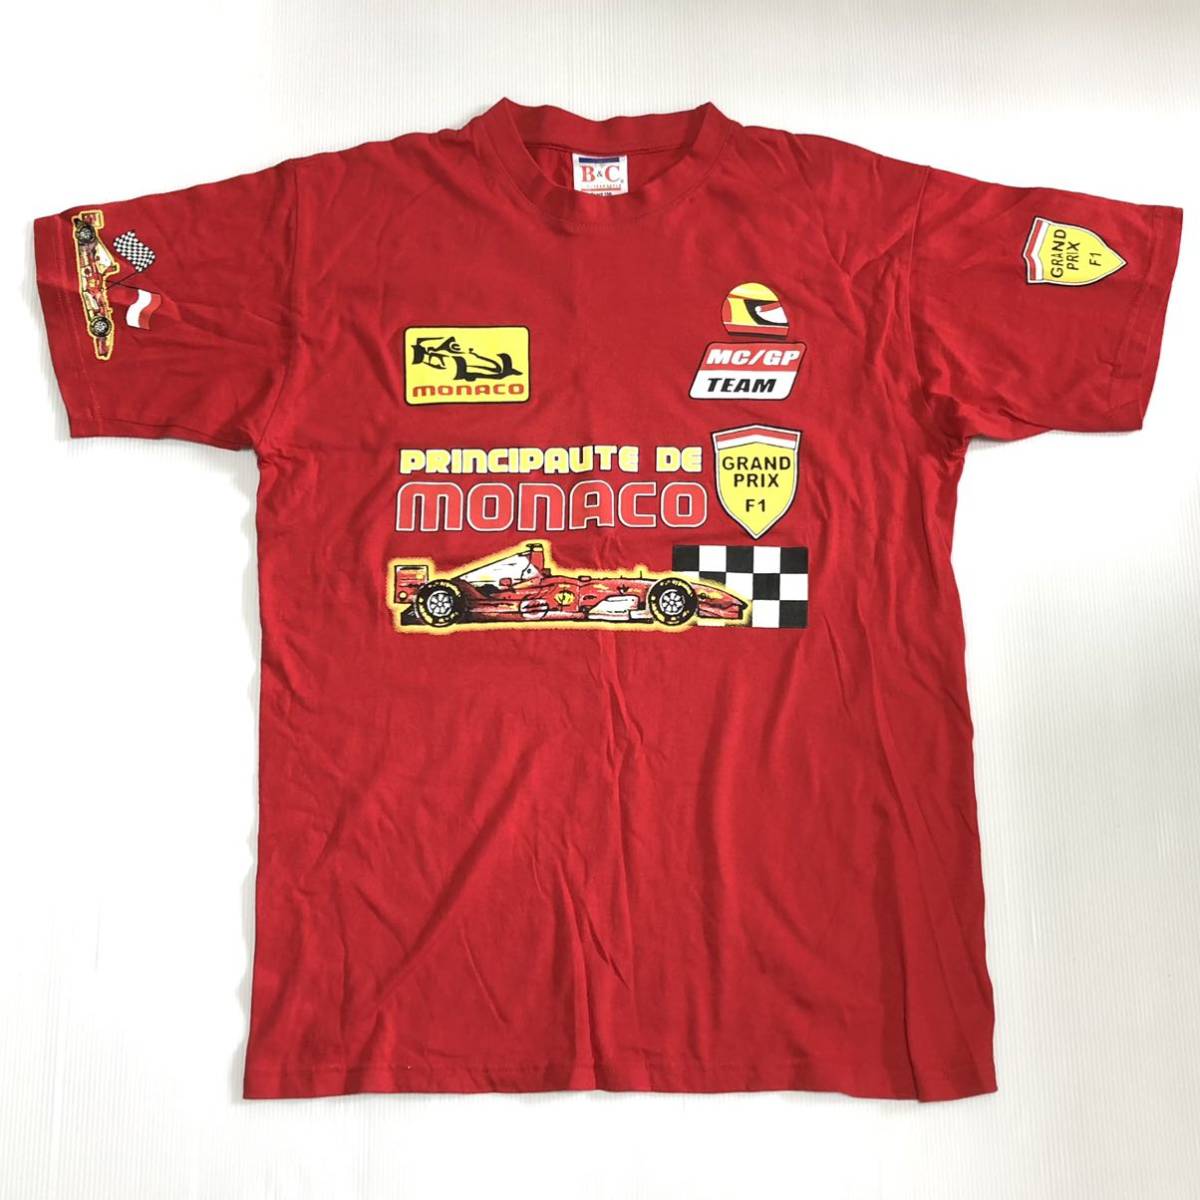 ◎ MONACO GRAND PRIX Tシャツ Sサイズ F1 MC/GP TEAM・world championship FORMULA ONE モナコ グランドプリックス レーシングチームの画像1